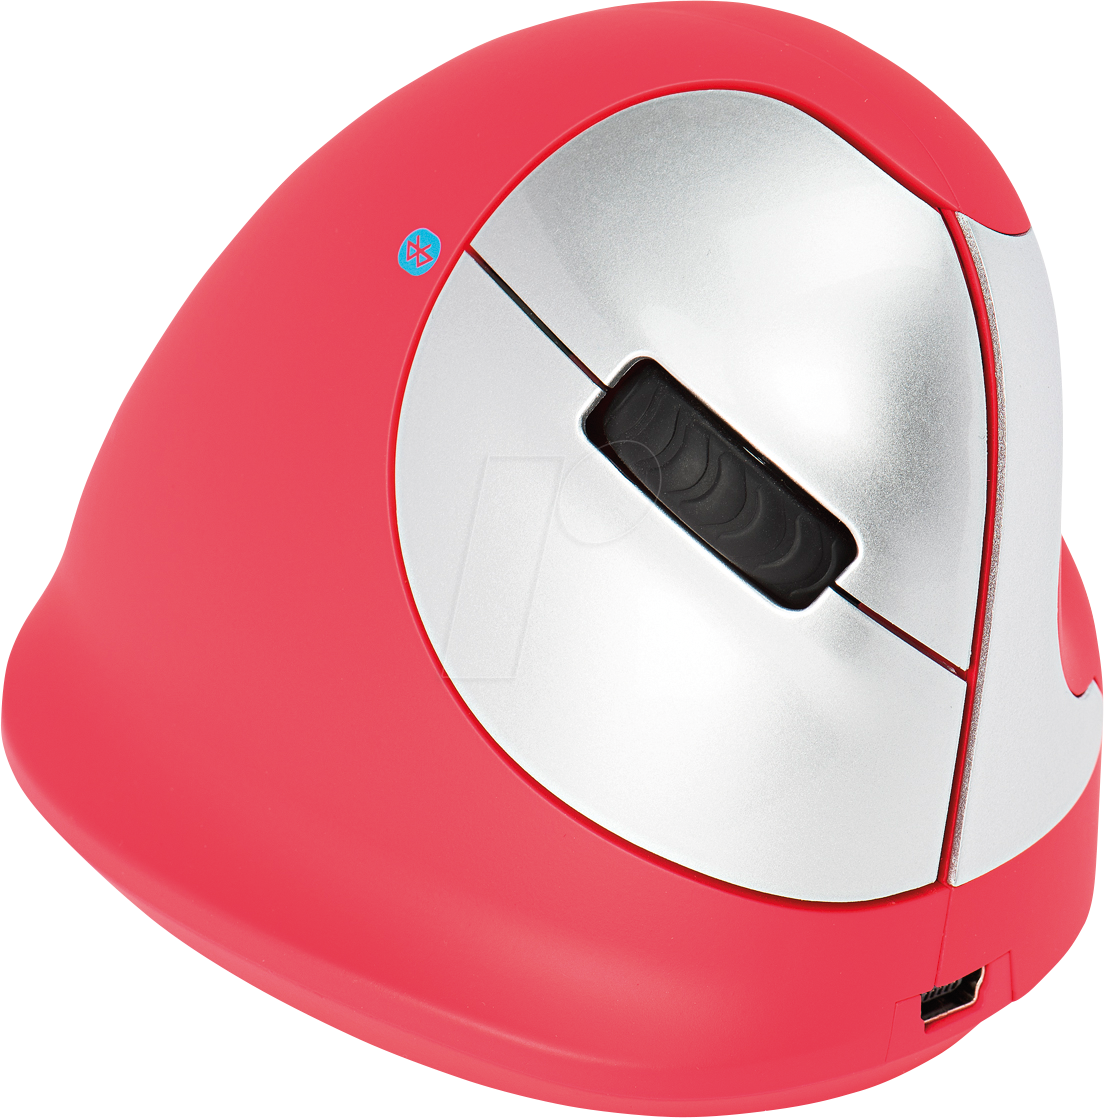 R-GO HEREDR - Maus (Mouse), Bluetooth, vertikal, Rechtshänder, M von R-Go Tools